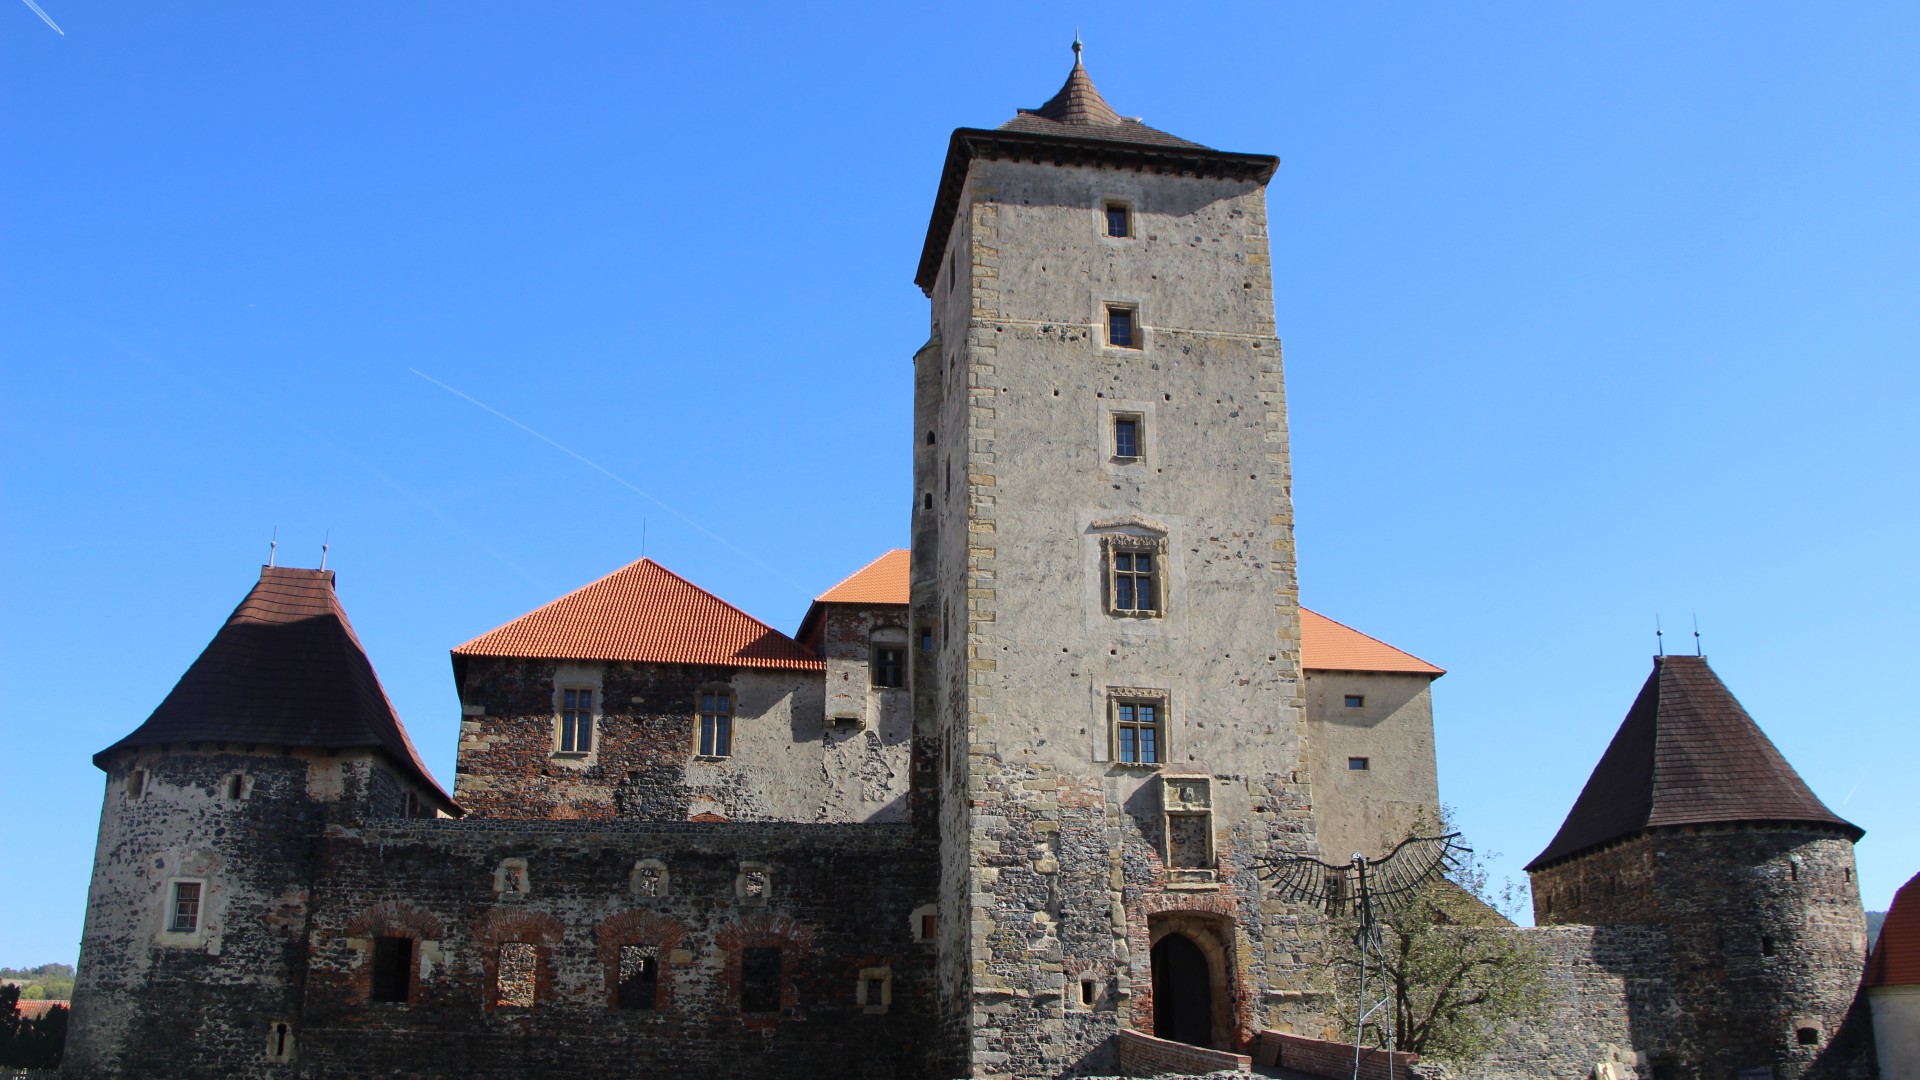 Svihov Castle